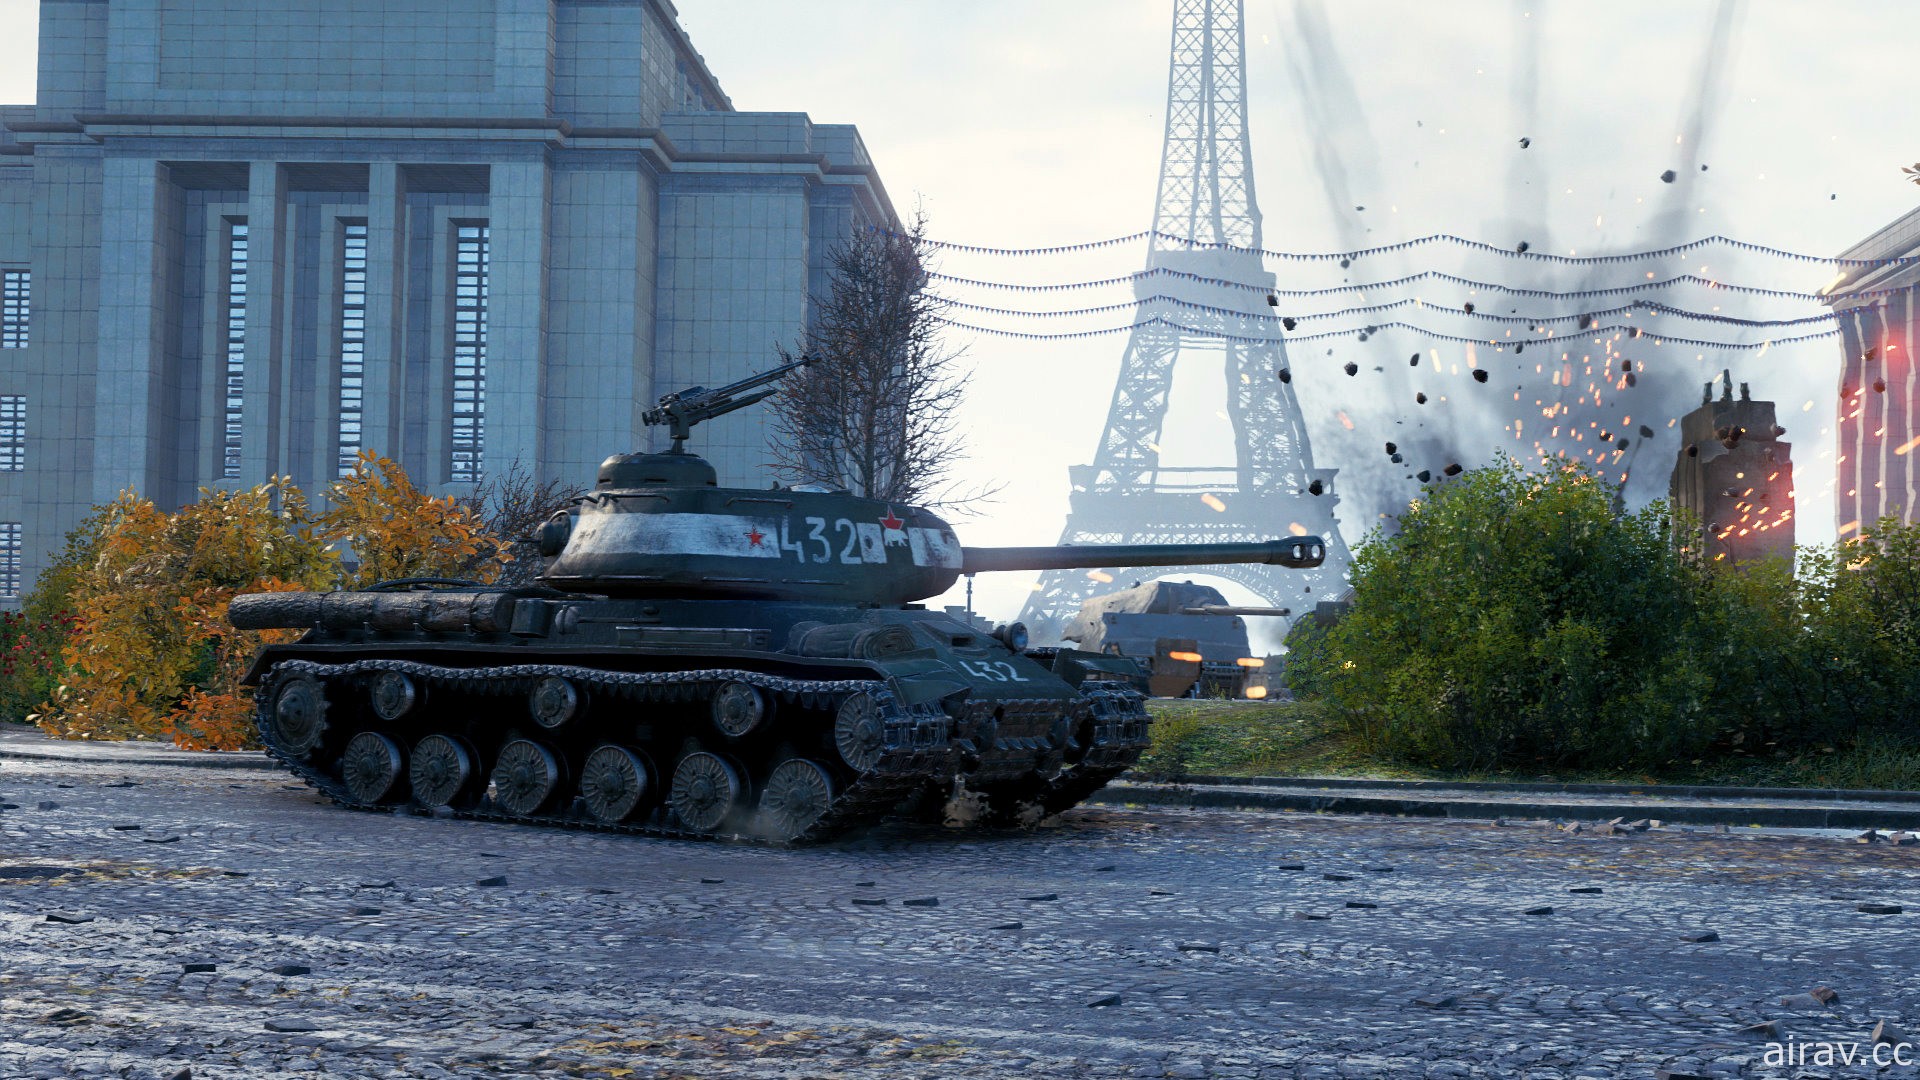 二戰題材對戰遊戲《戰車世界》預計 2021 年內登陸 Steam 平台